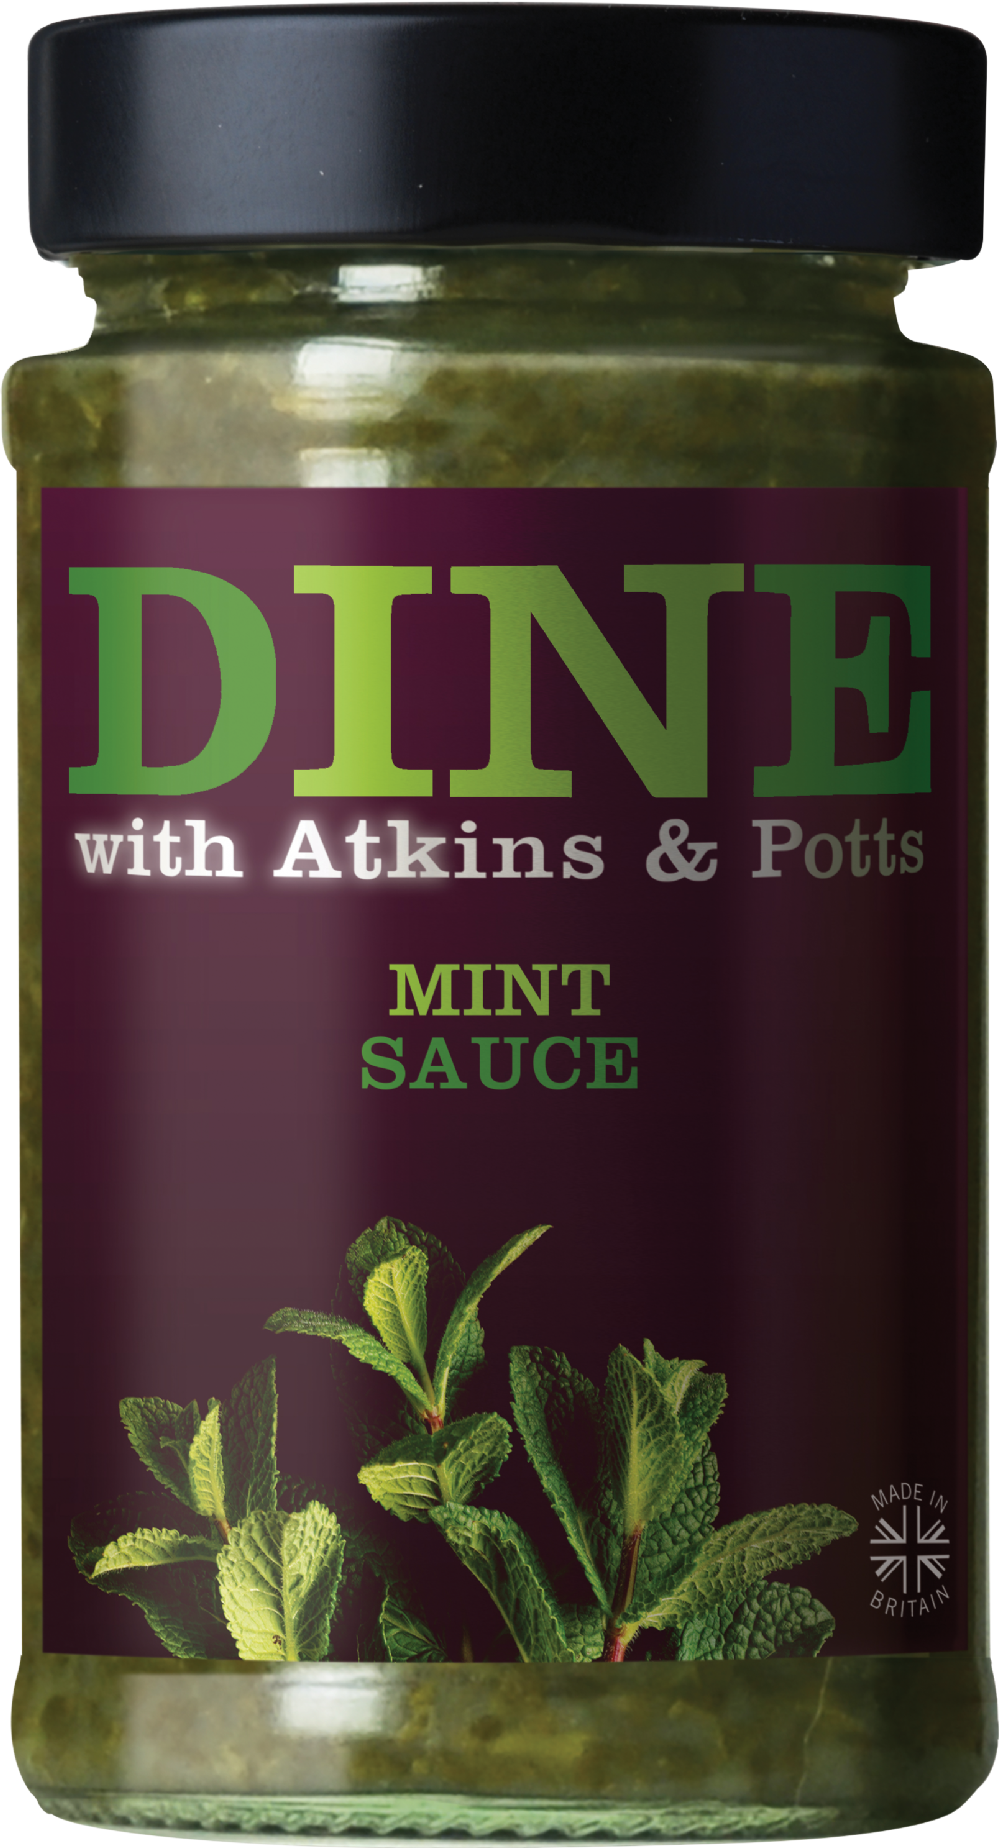 ATKINS & POTTS Mint Sauce 240g